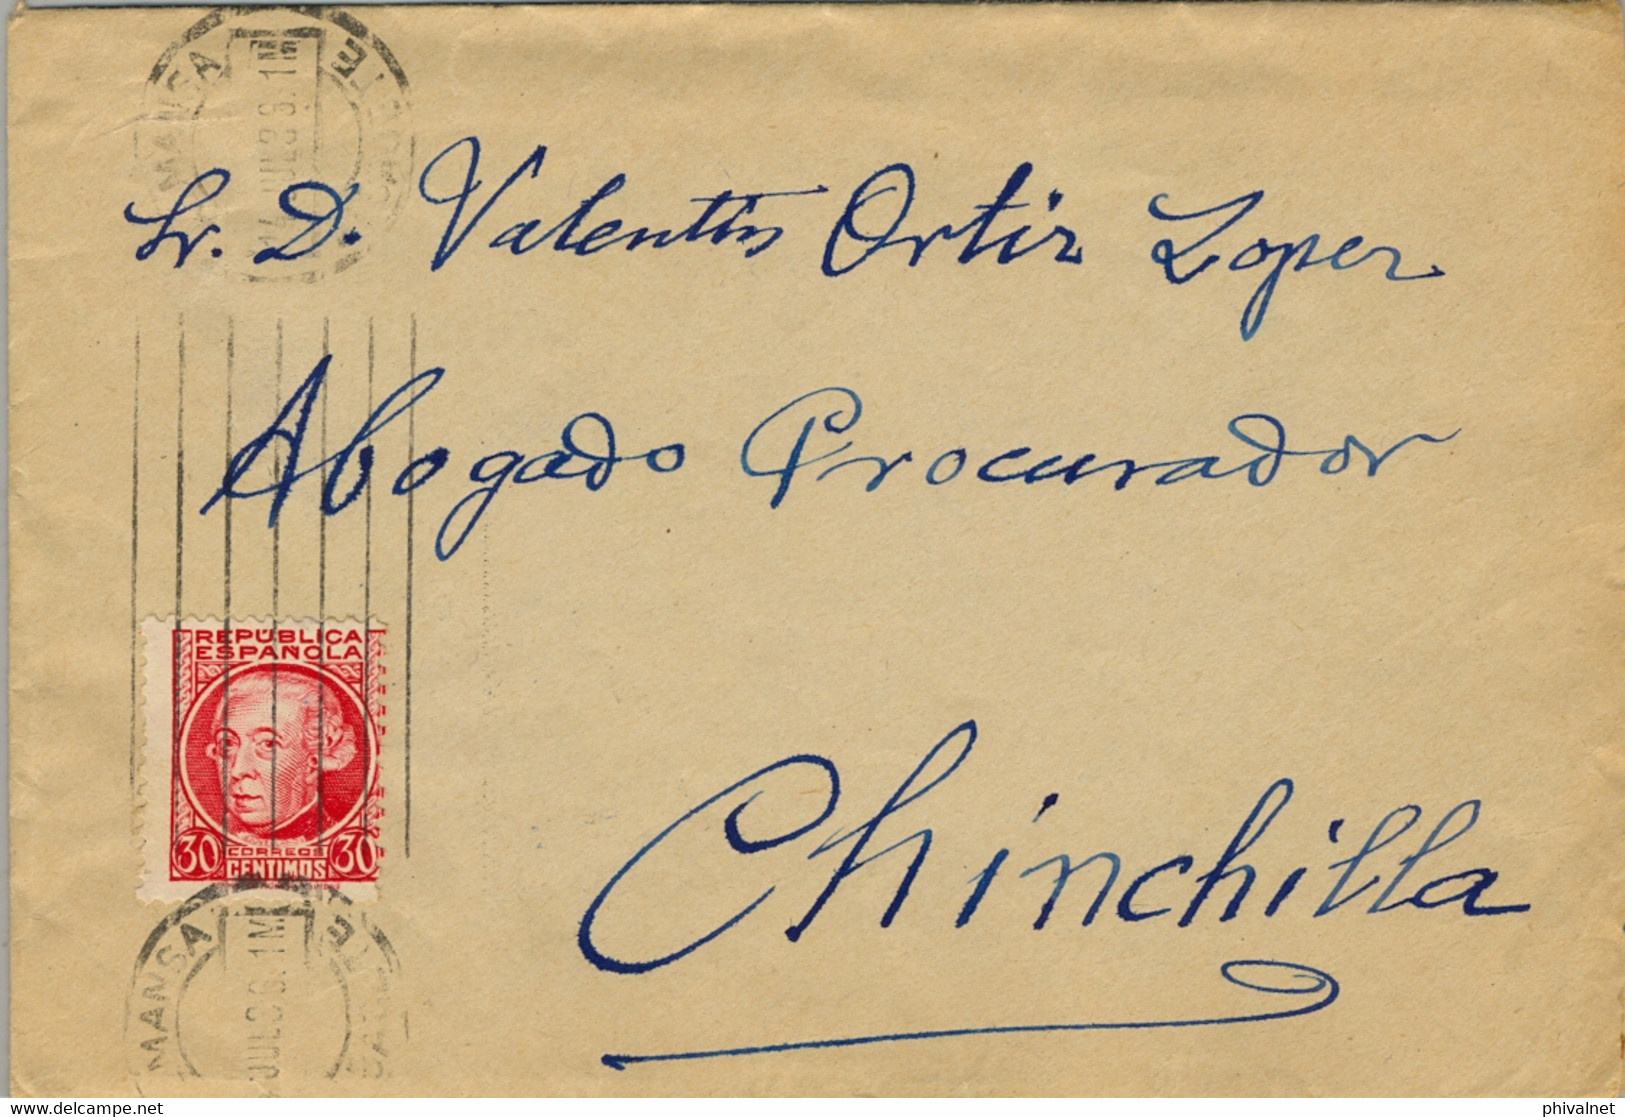 1936 ALBACETE , SOBRE CIRCULADO ENTRE ALMANSA Y CHINCHILLA ,  LLEGADA EN AZUL AL DORSO - Briefe U. Dokumente